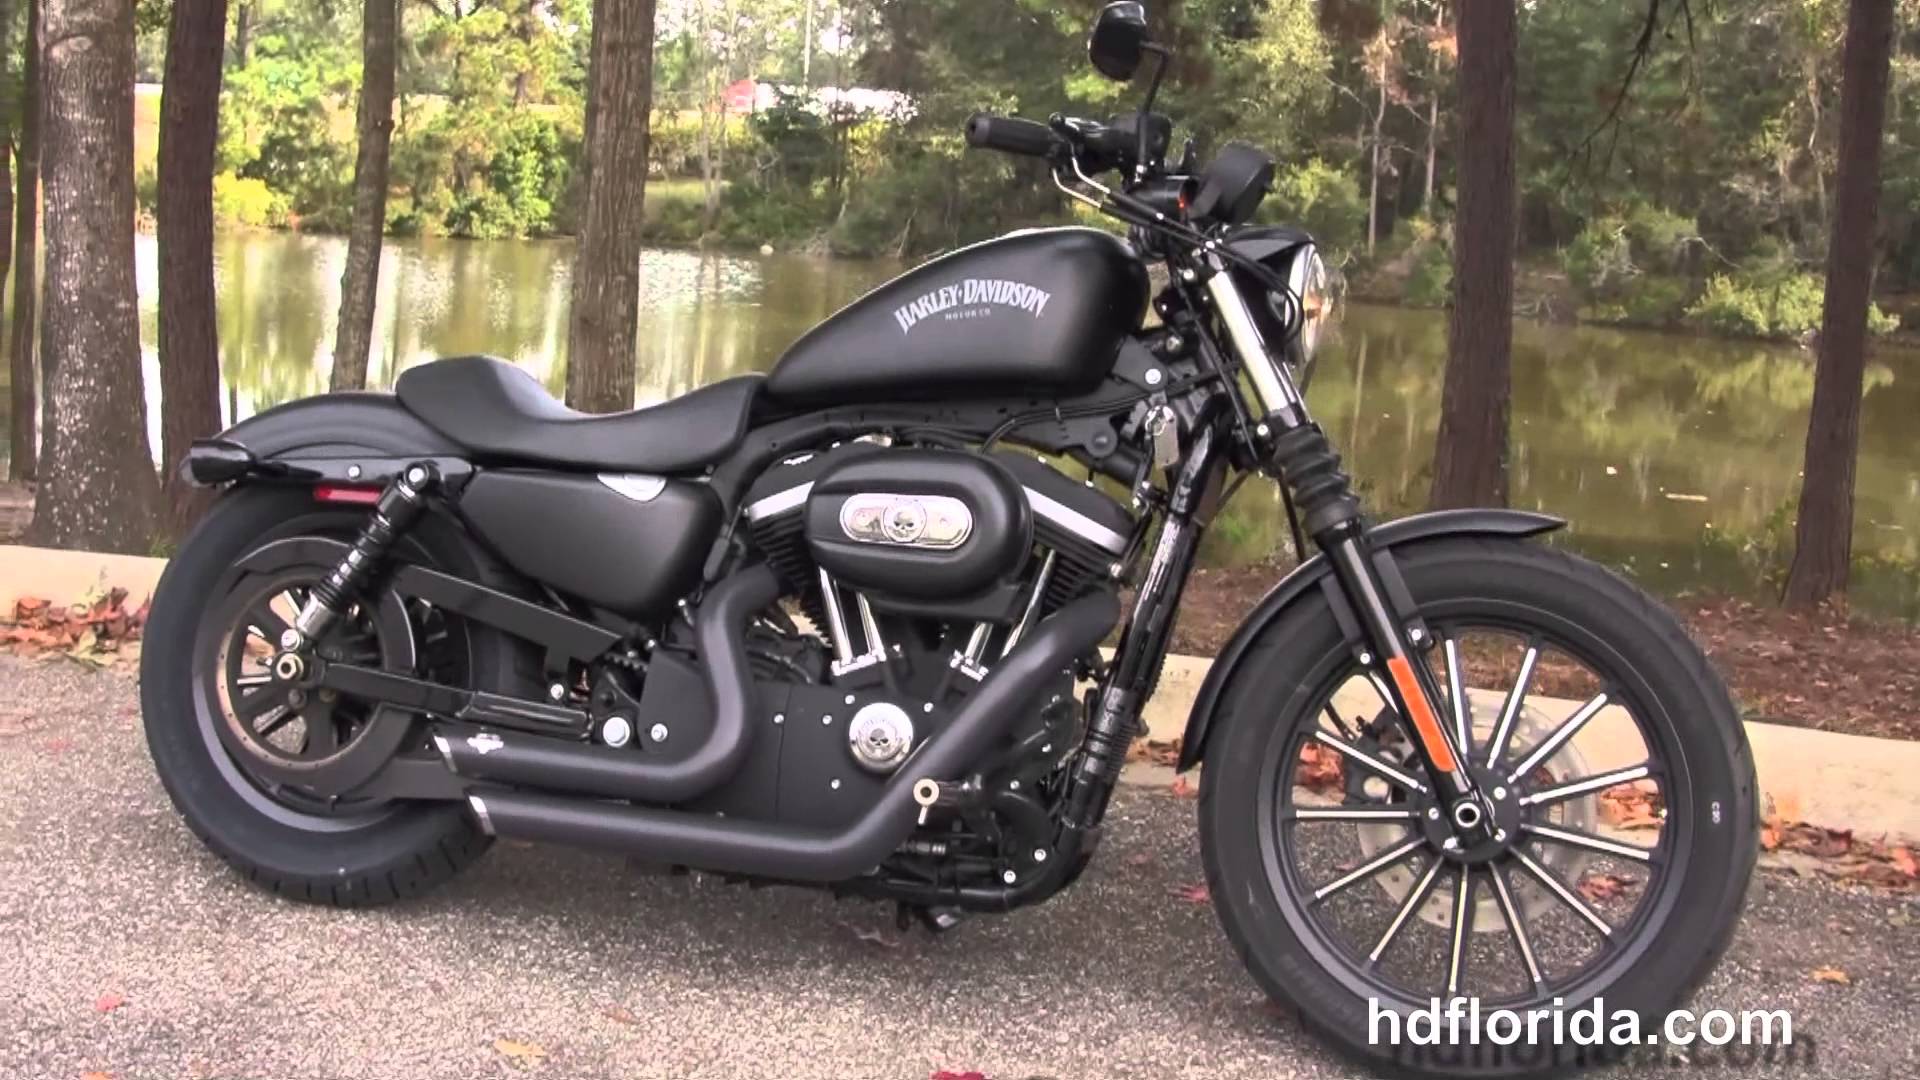 Wallpaper 2015 Harley Davidson Iron 883